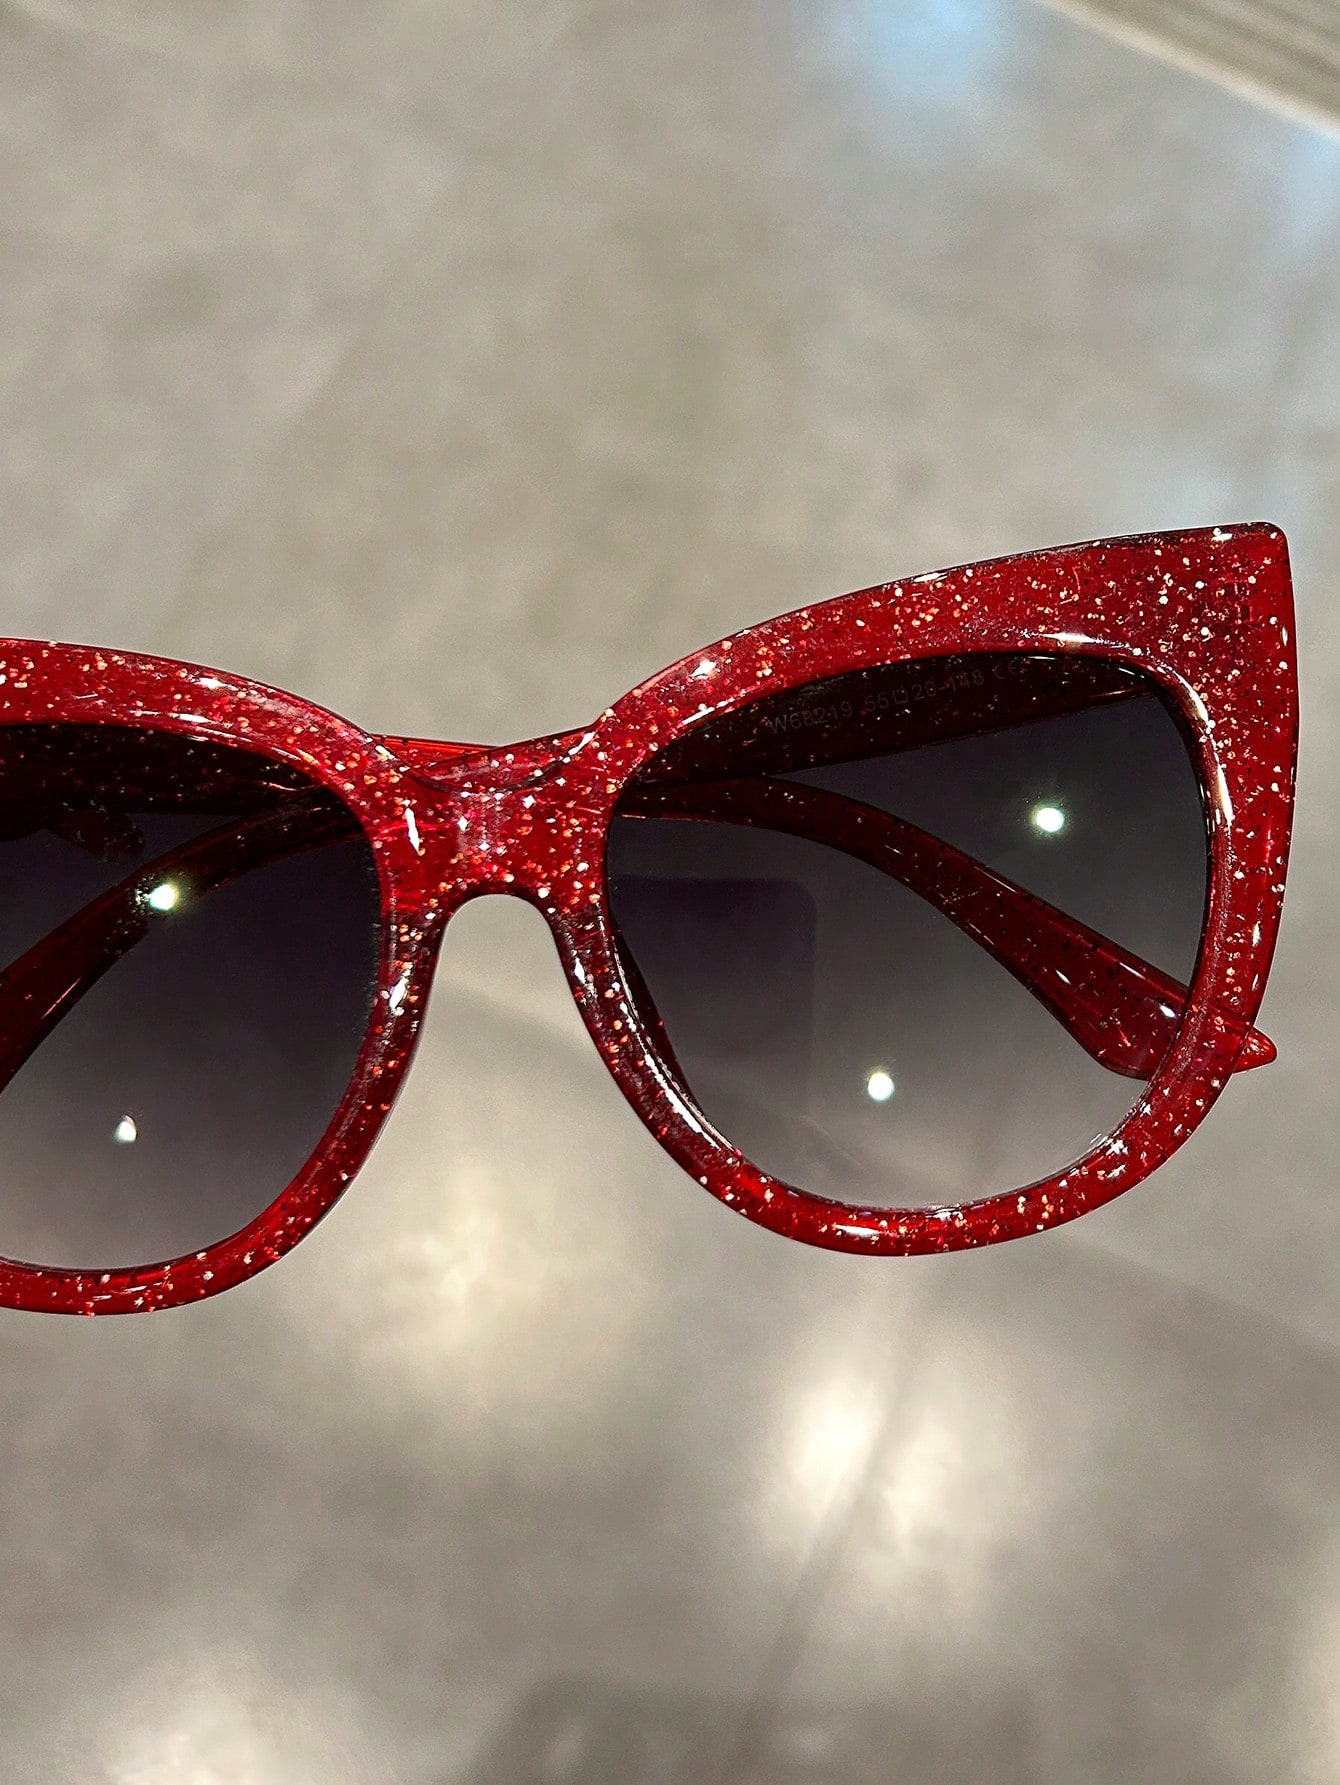 Большие солнцезащитные очки «кошачий глаз» с леопардовым декором. Женские очки для активного отдыха и путешествий.